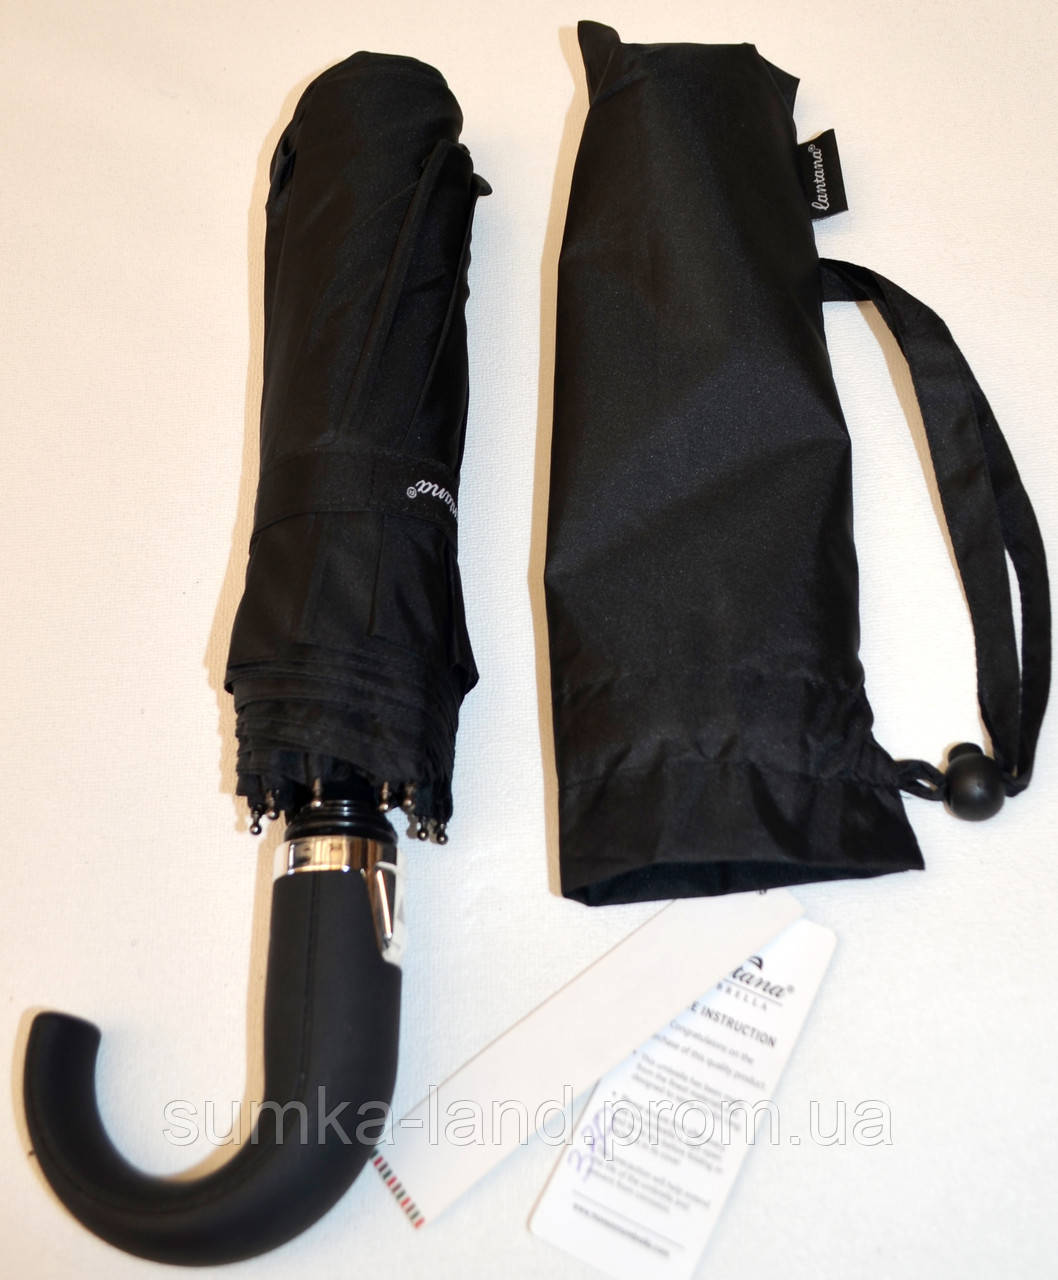 Мужской черный зонт Lantana Полуавтомат на 9 спиц